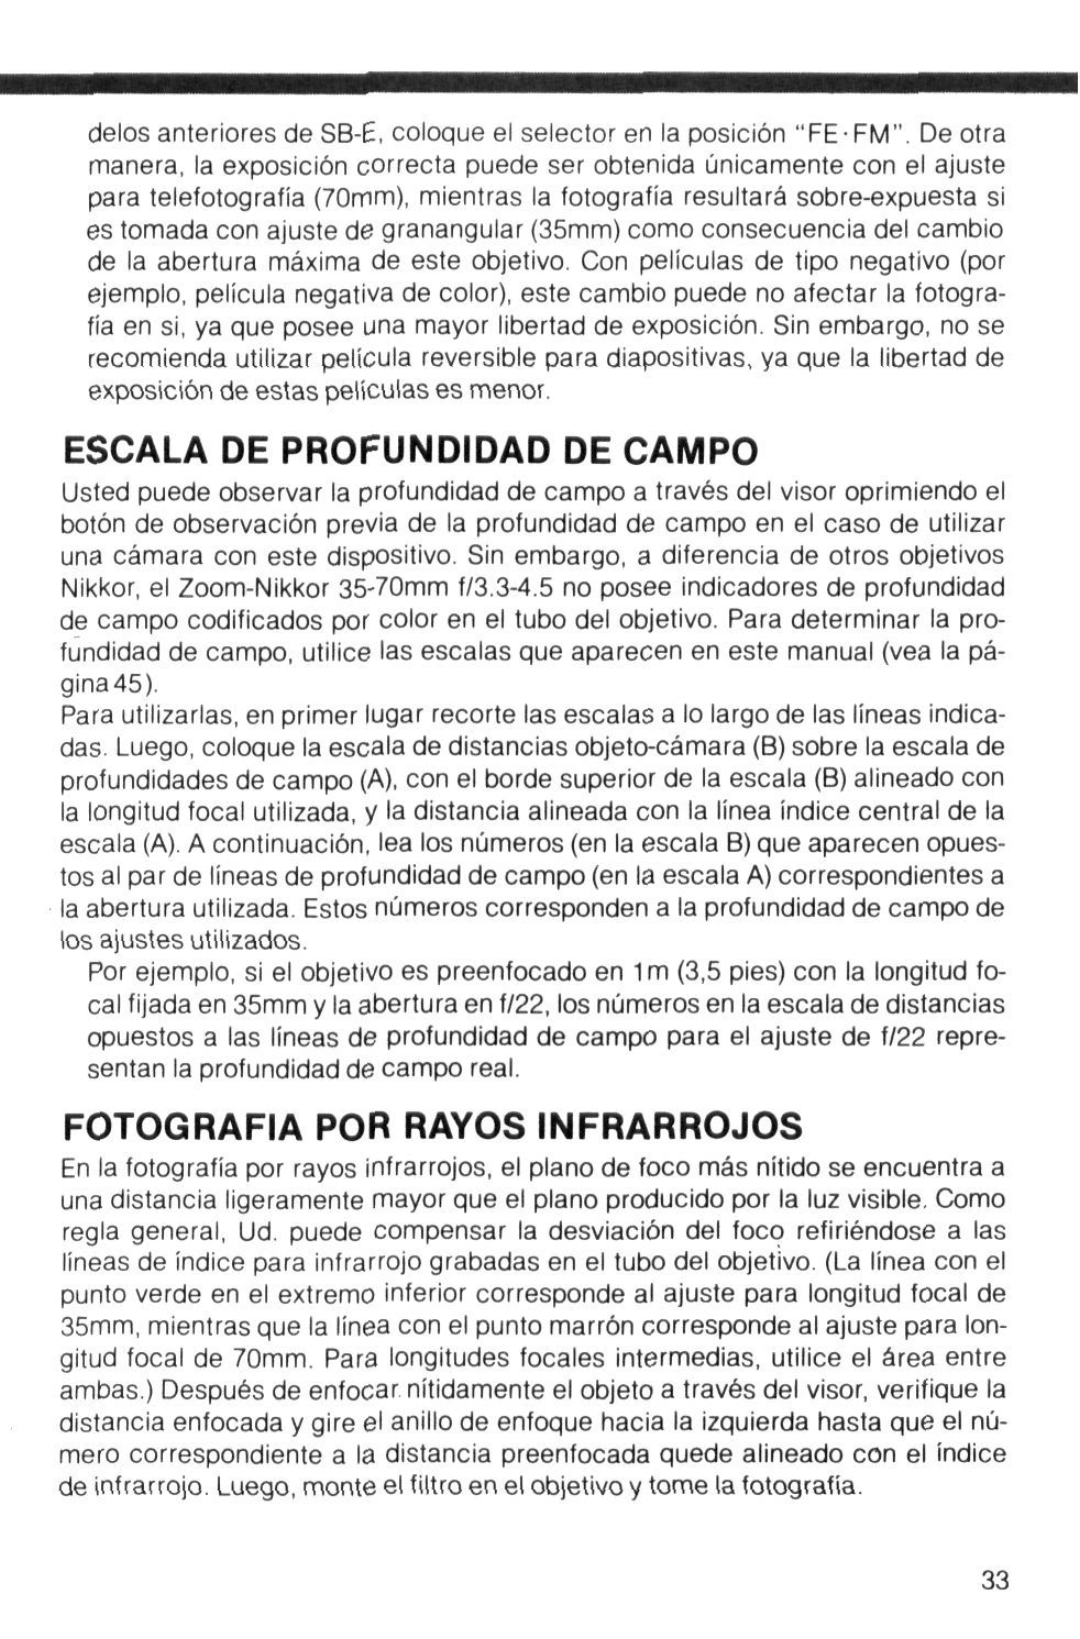 Nikon instruction manual Escala De Profundidad De Campo, Fotografia Por Rayos Infrarrojos 